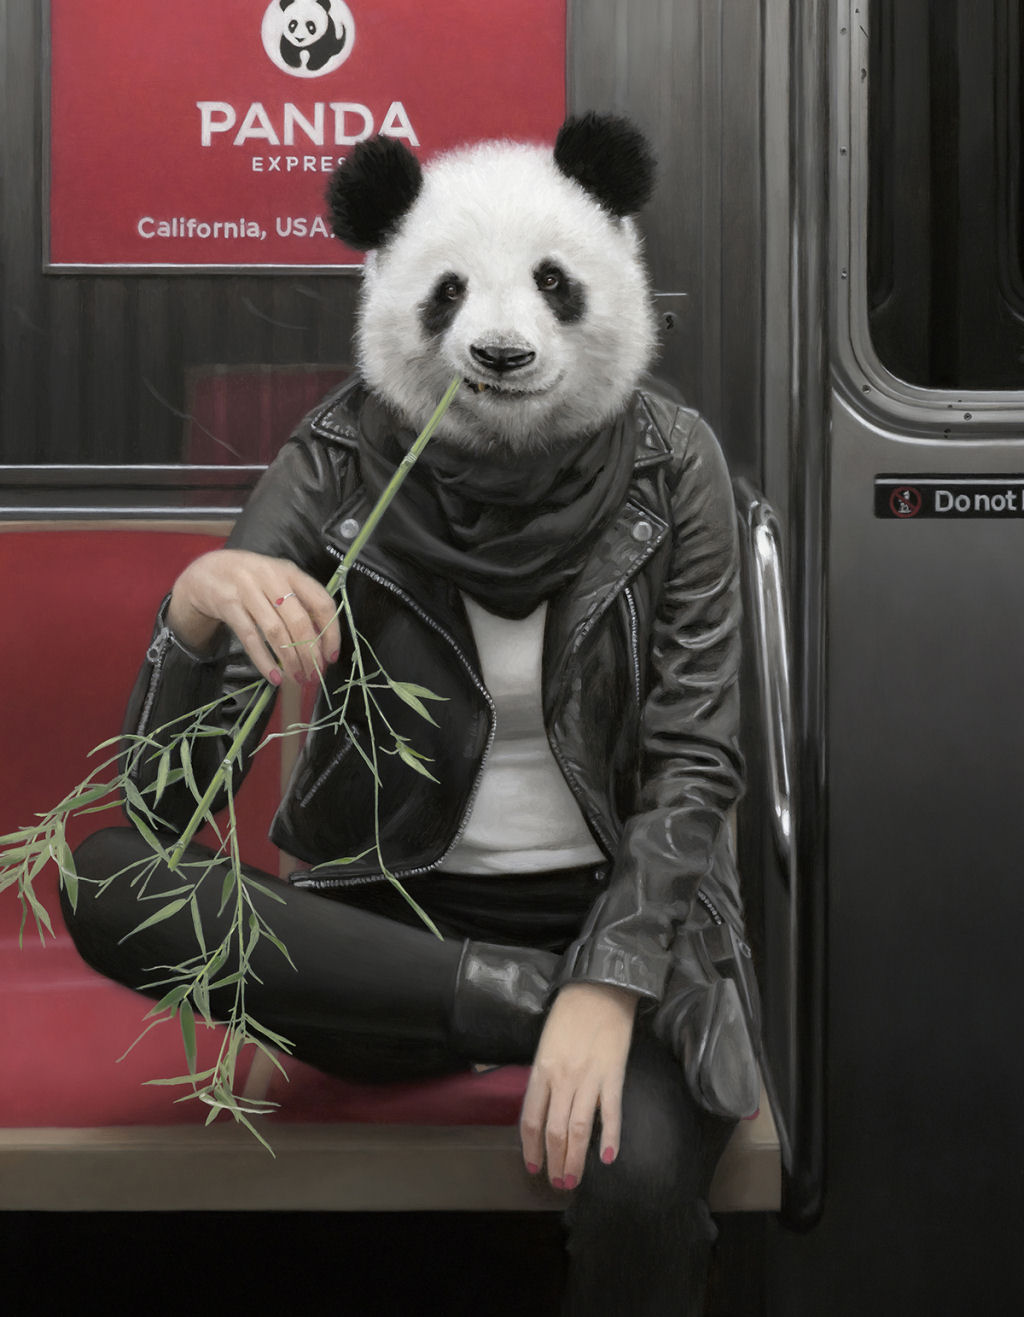 Estas pinturas surreais mostram 'viagens animais' pelo metr de Nova York 09